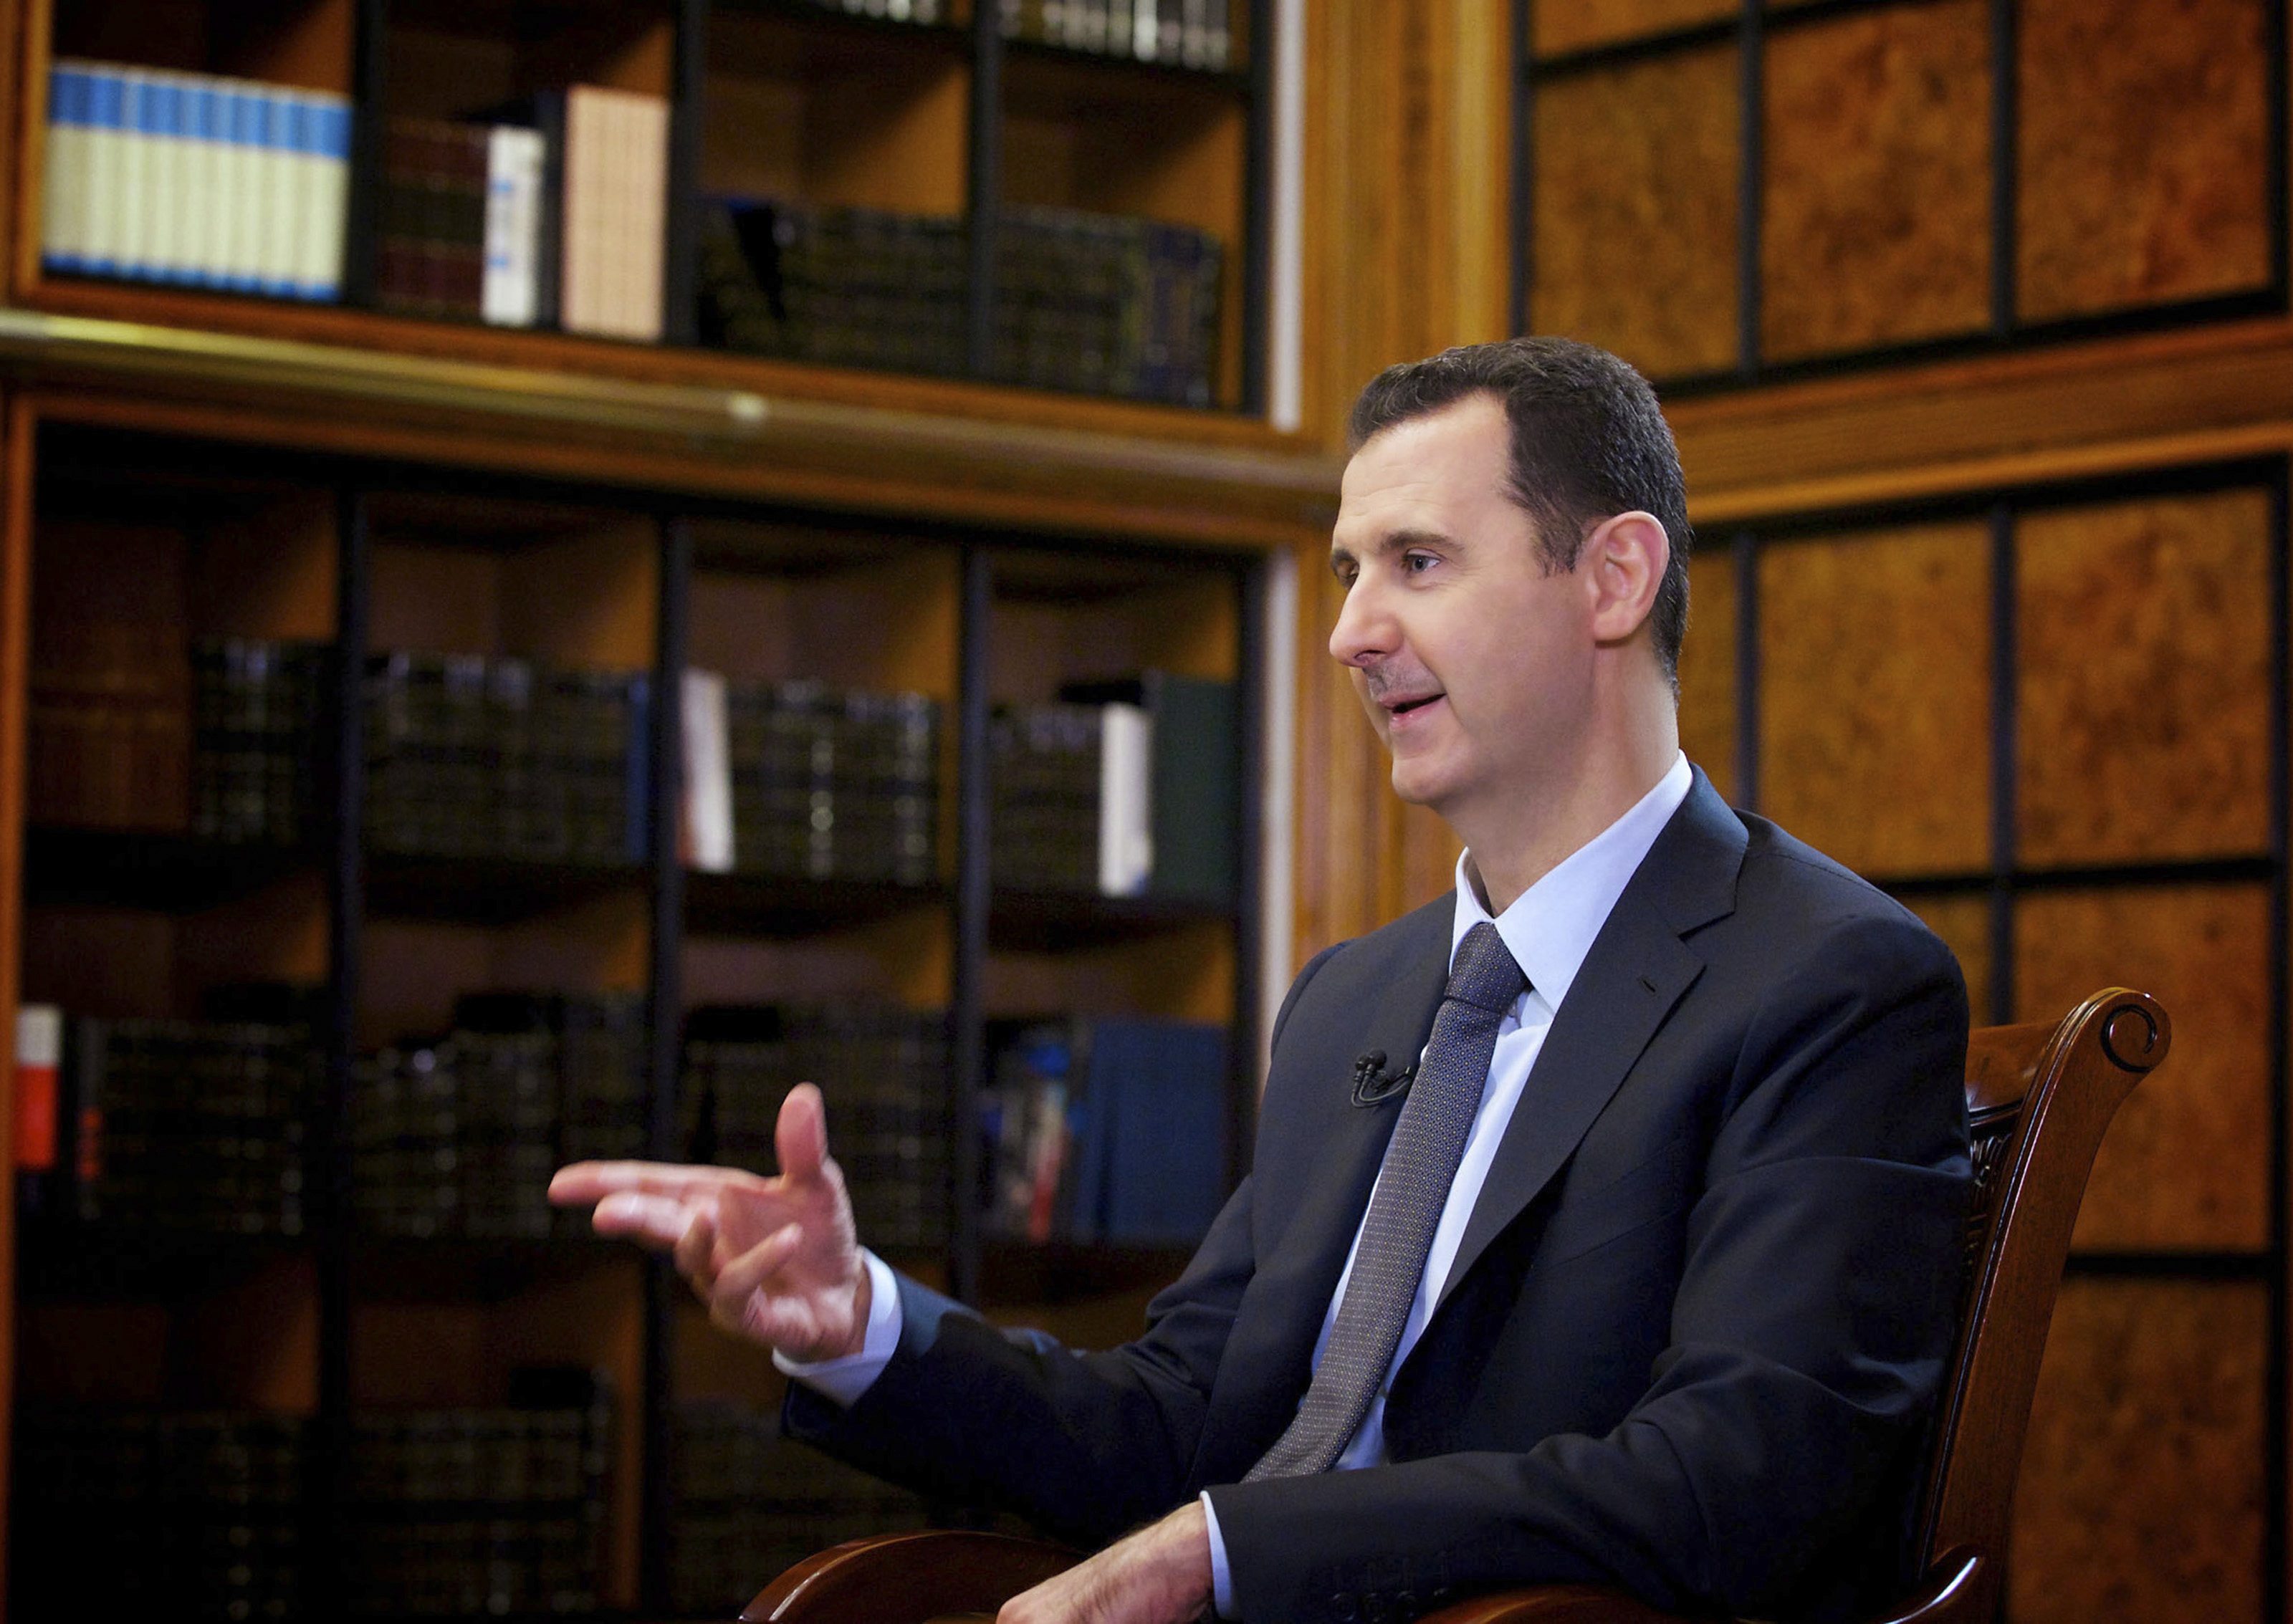 Opinion: The Assad Regime’s Final Demise